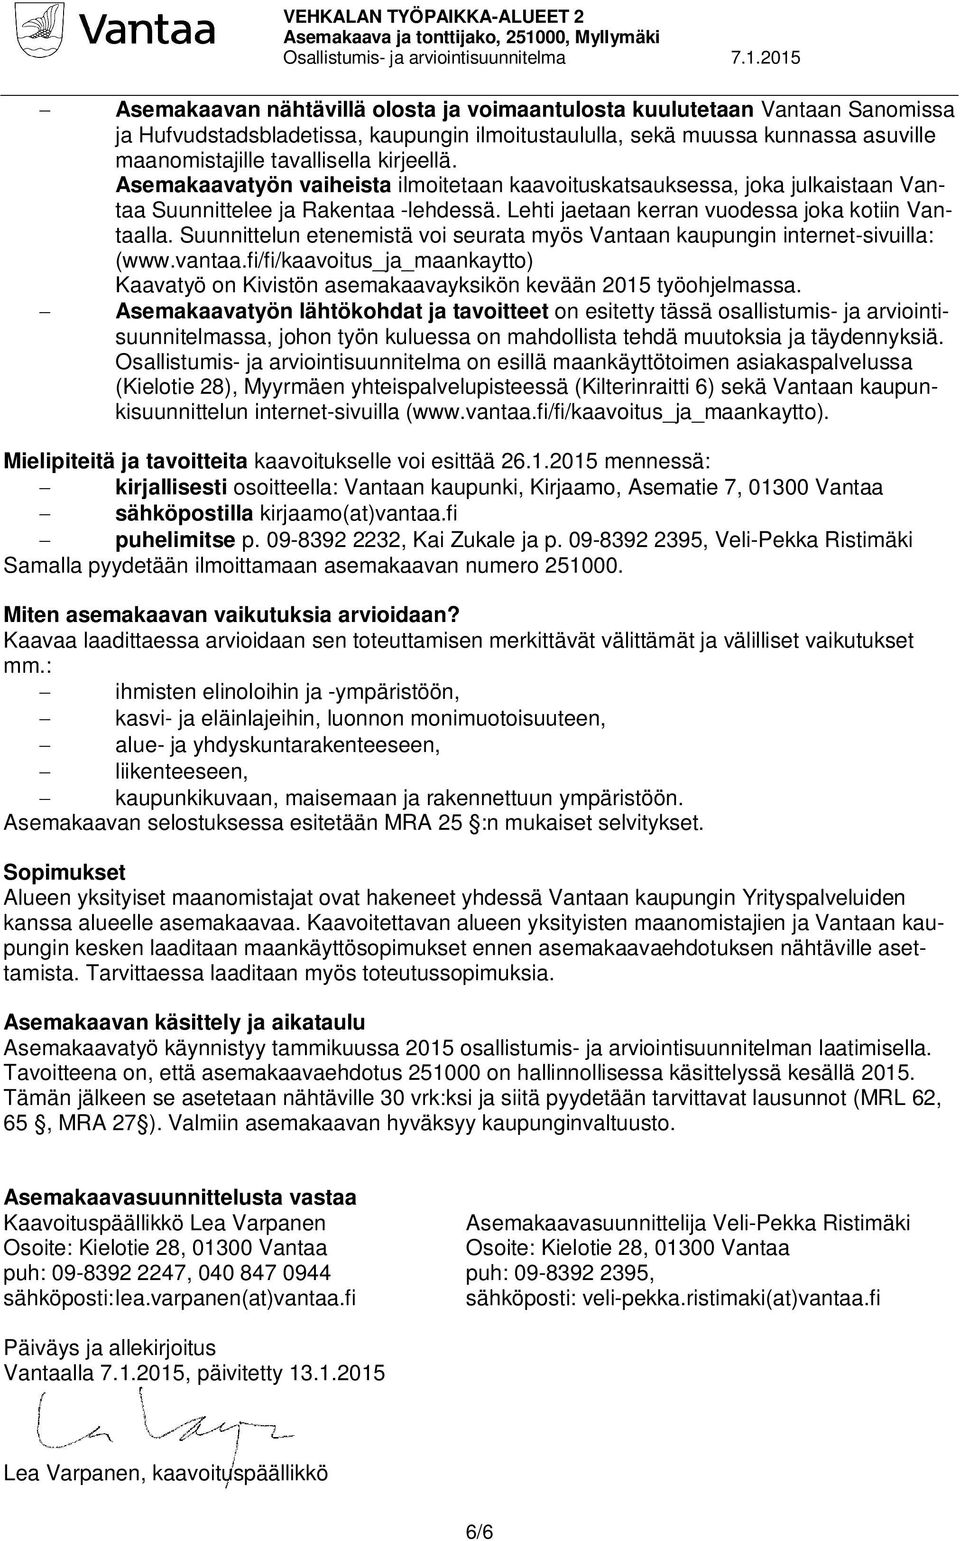 Suunnittelun etenemistä voi seurata myös Vantaan kaupungin internet-sivuilla: (www.vantaa.fi/fi/kaavoitus_ja_maankaytto) Kaavatyö on Kivistön asemakaavayksikön kevään 2015 työohjelmassa.